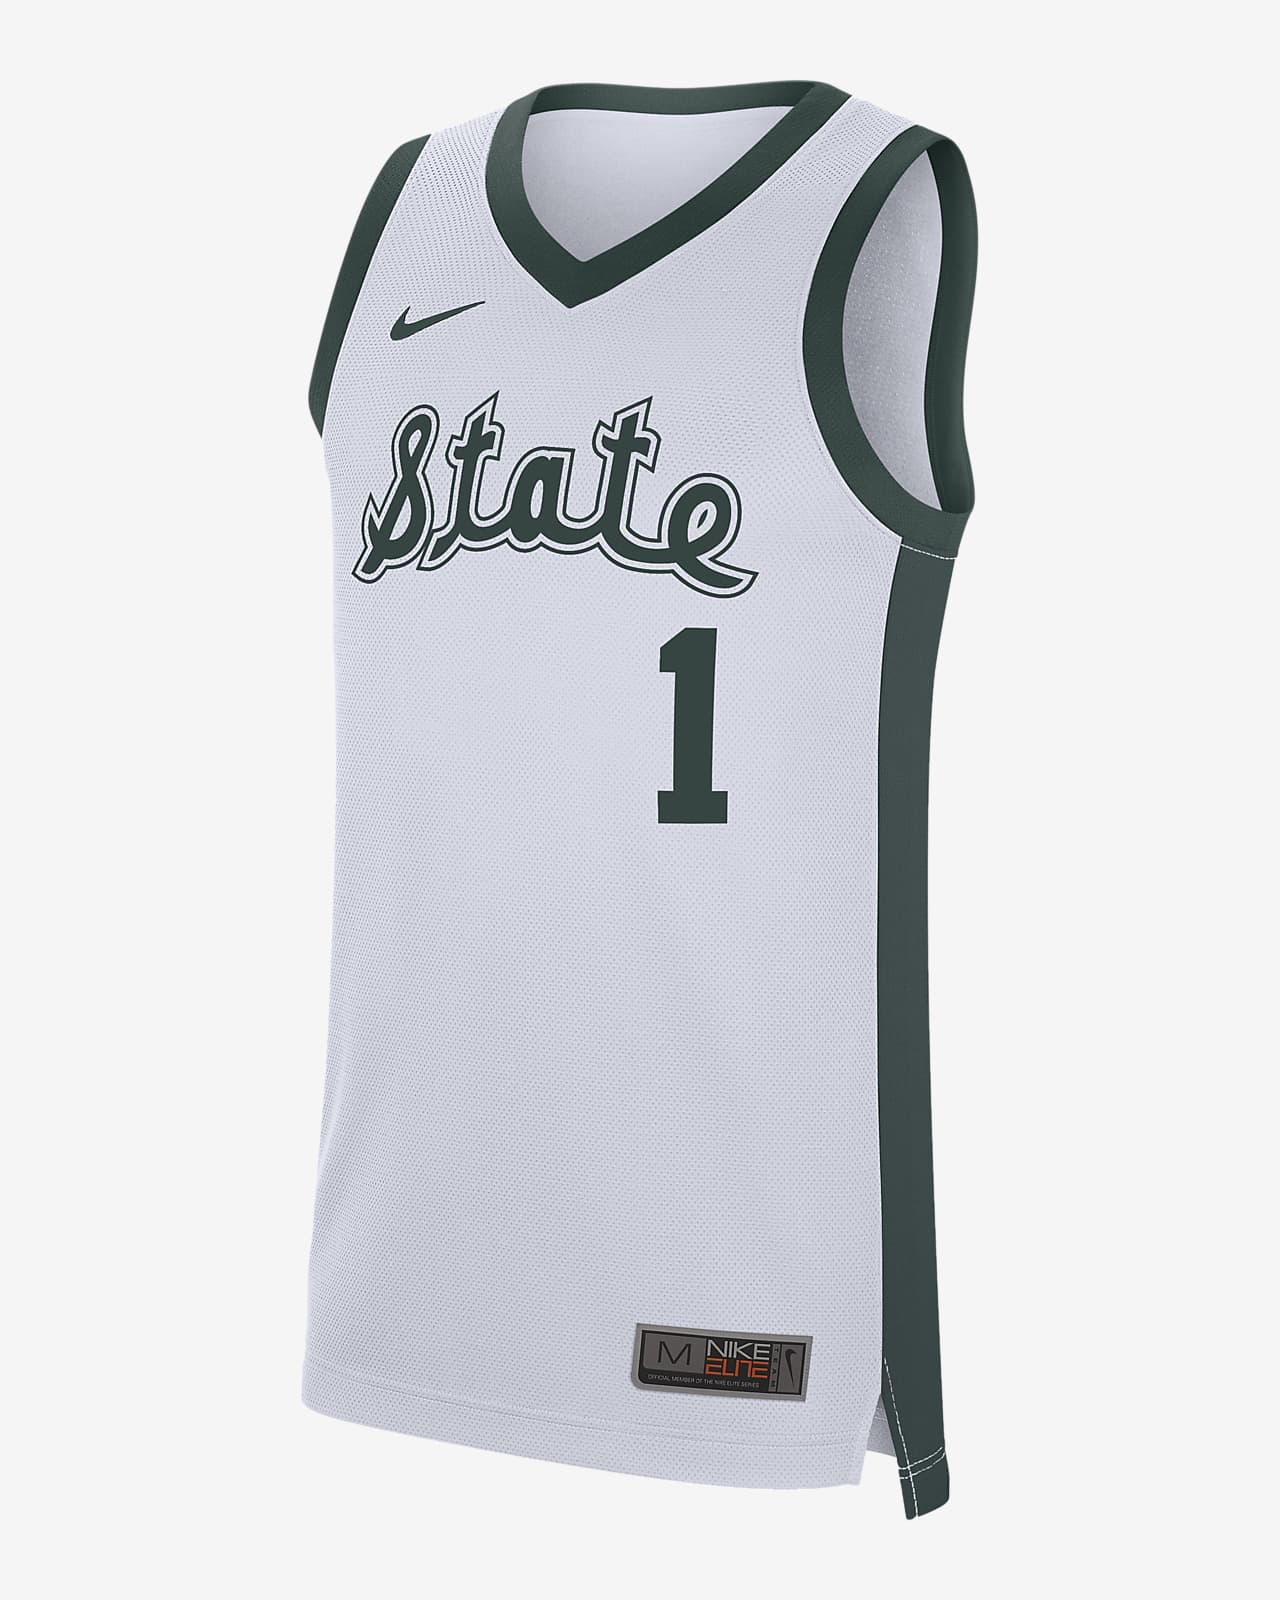 Camiseta de básquetbol para hombre Nike College Replica Retro (Michigan State)